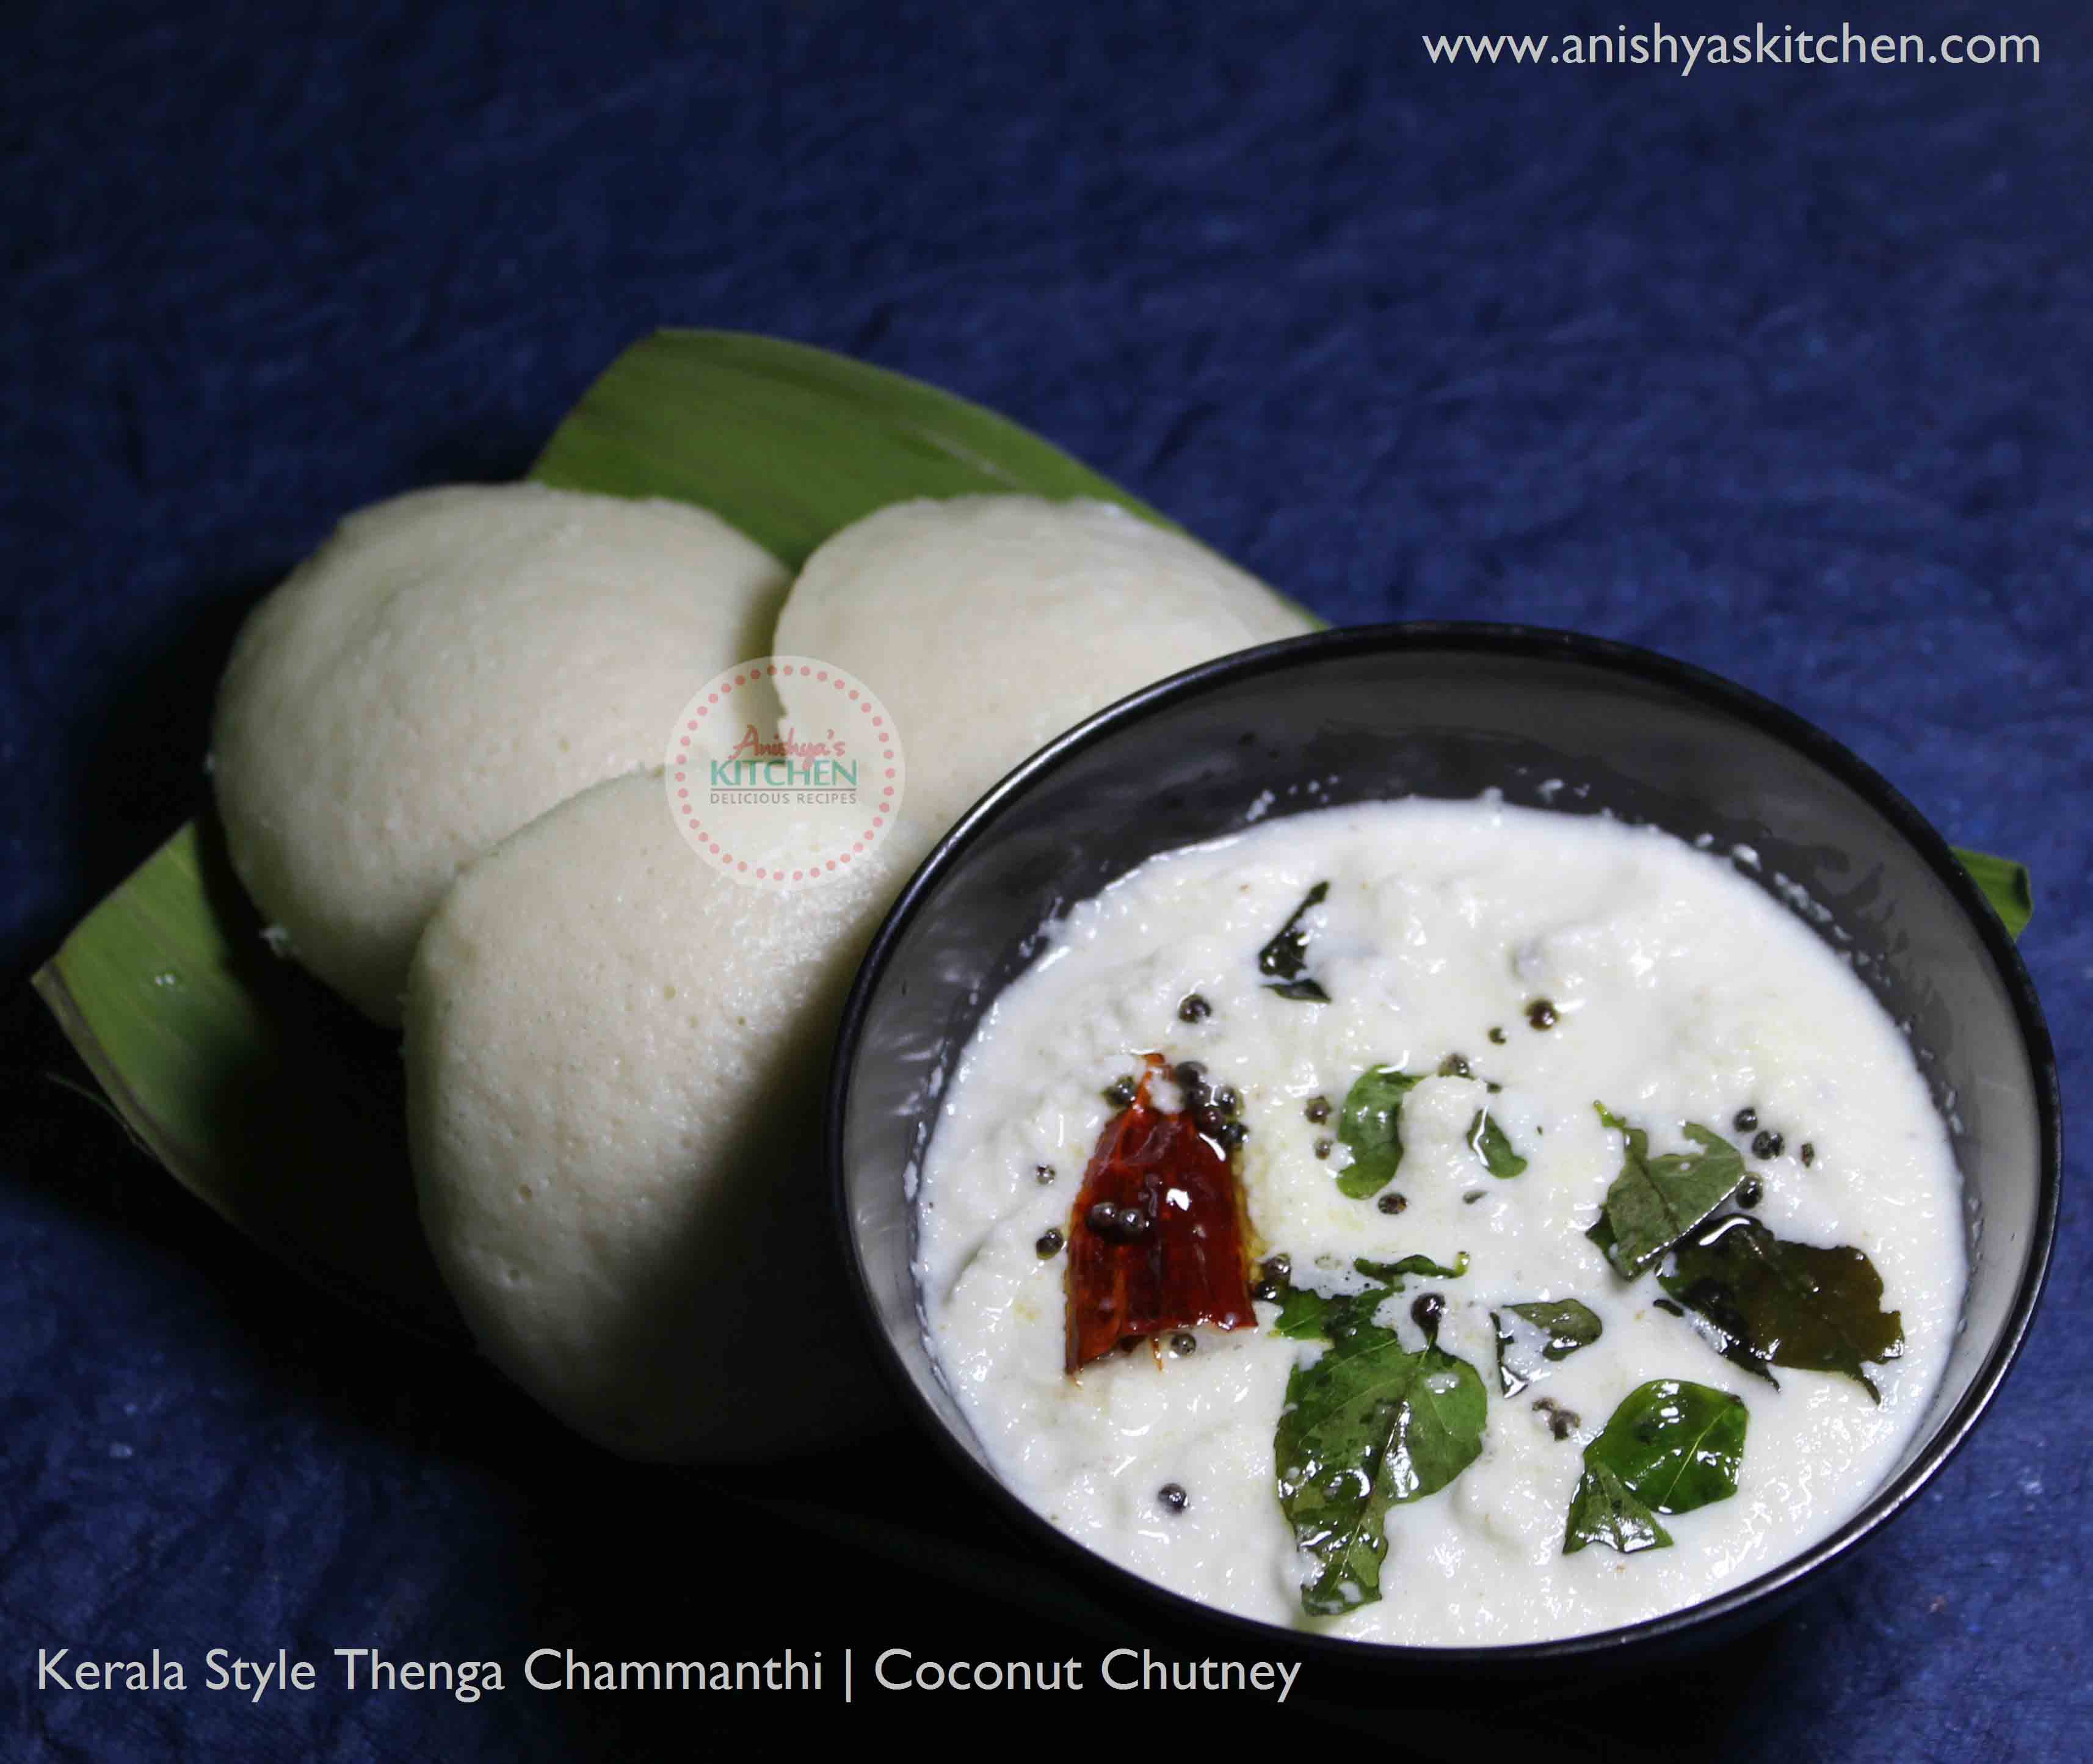 Kerala Style Coconut Chutney - Thenga Chammanthi